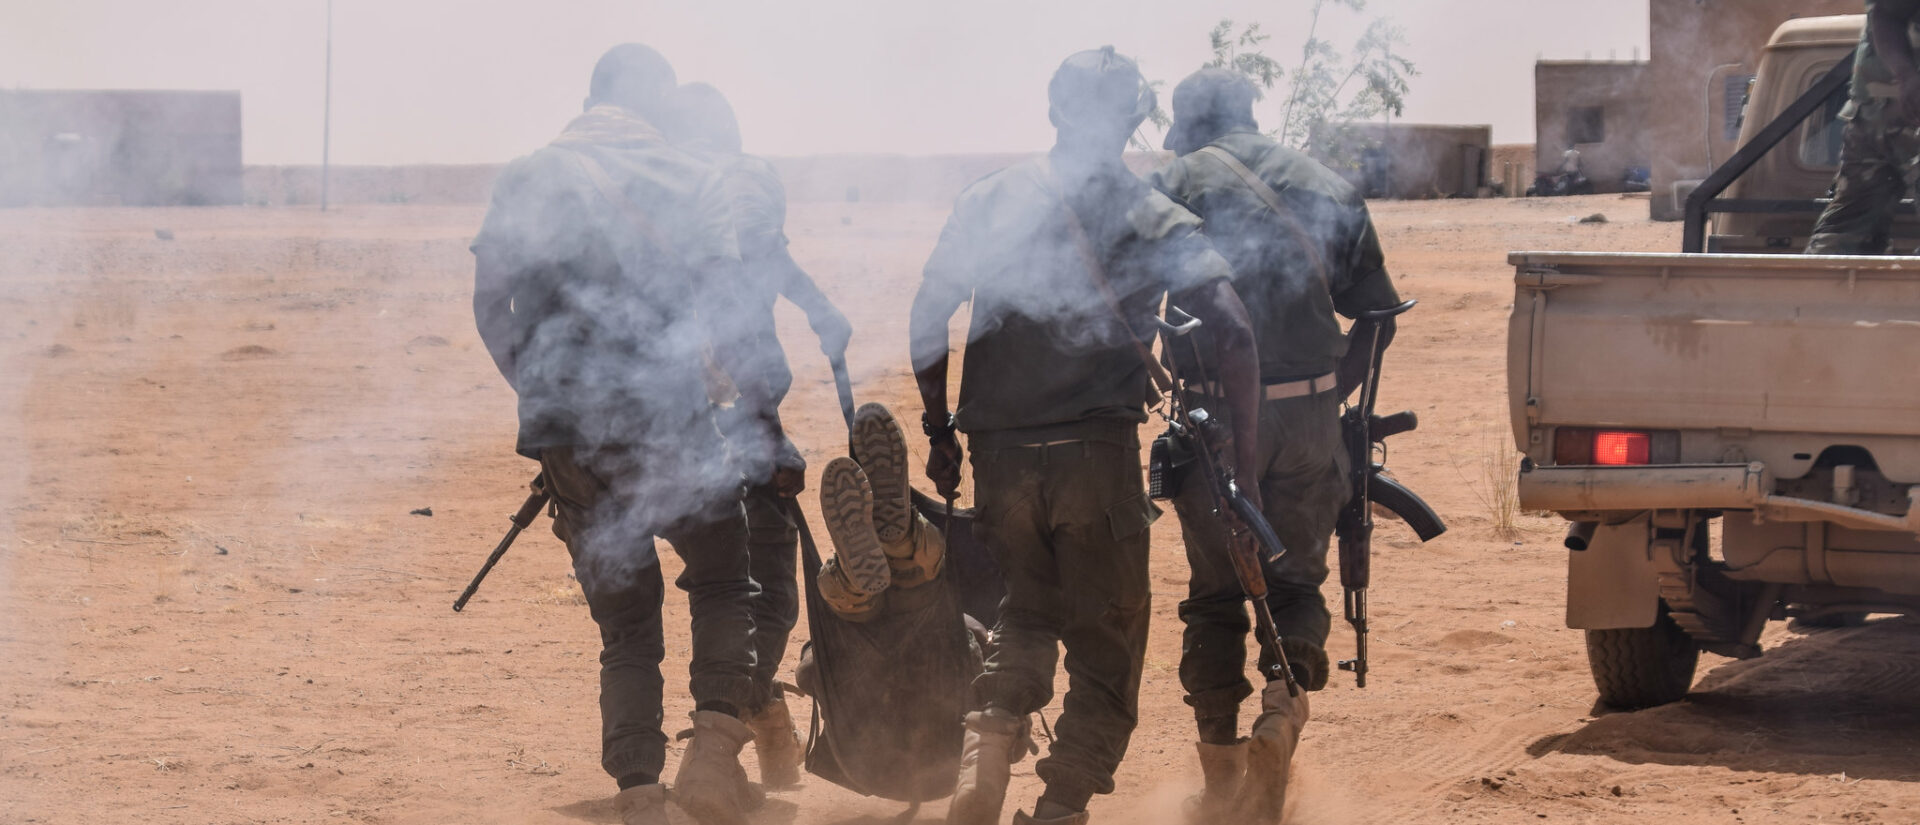 Les forces burkinabés doivent faire face à des attaques et des enlèvements au nord du pays | © USAFRICOM/Flickr/CC BY 2.0